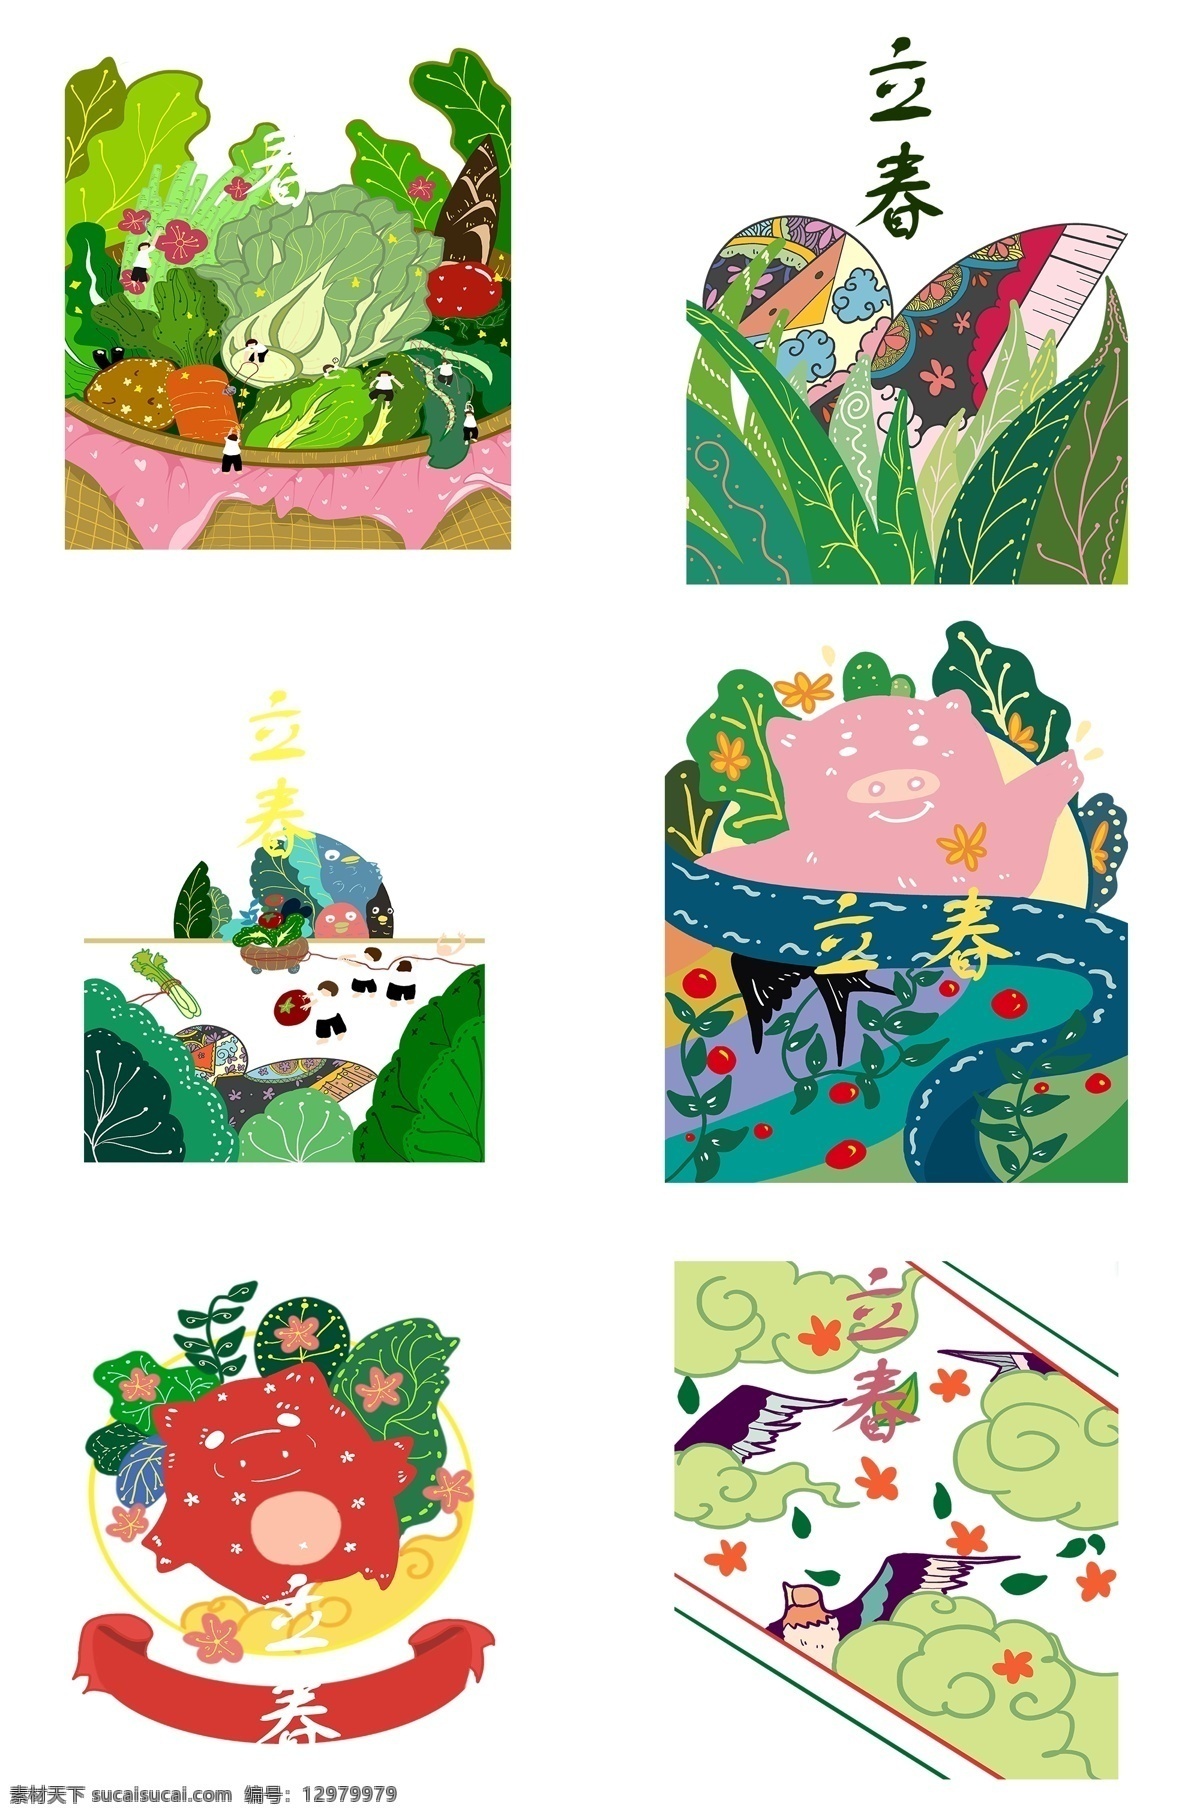 二十四节气 立春 卡通 创意 手绘 中国传统节日 万物复苏 原创手绘 生命力 春天 柳树 植物